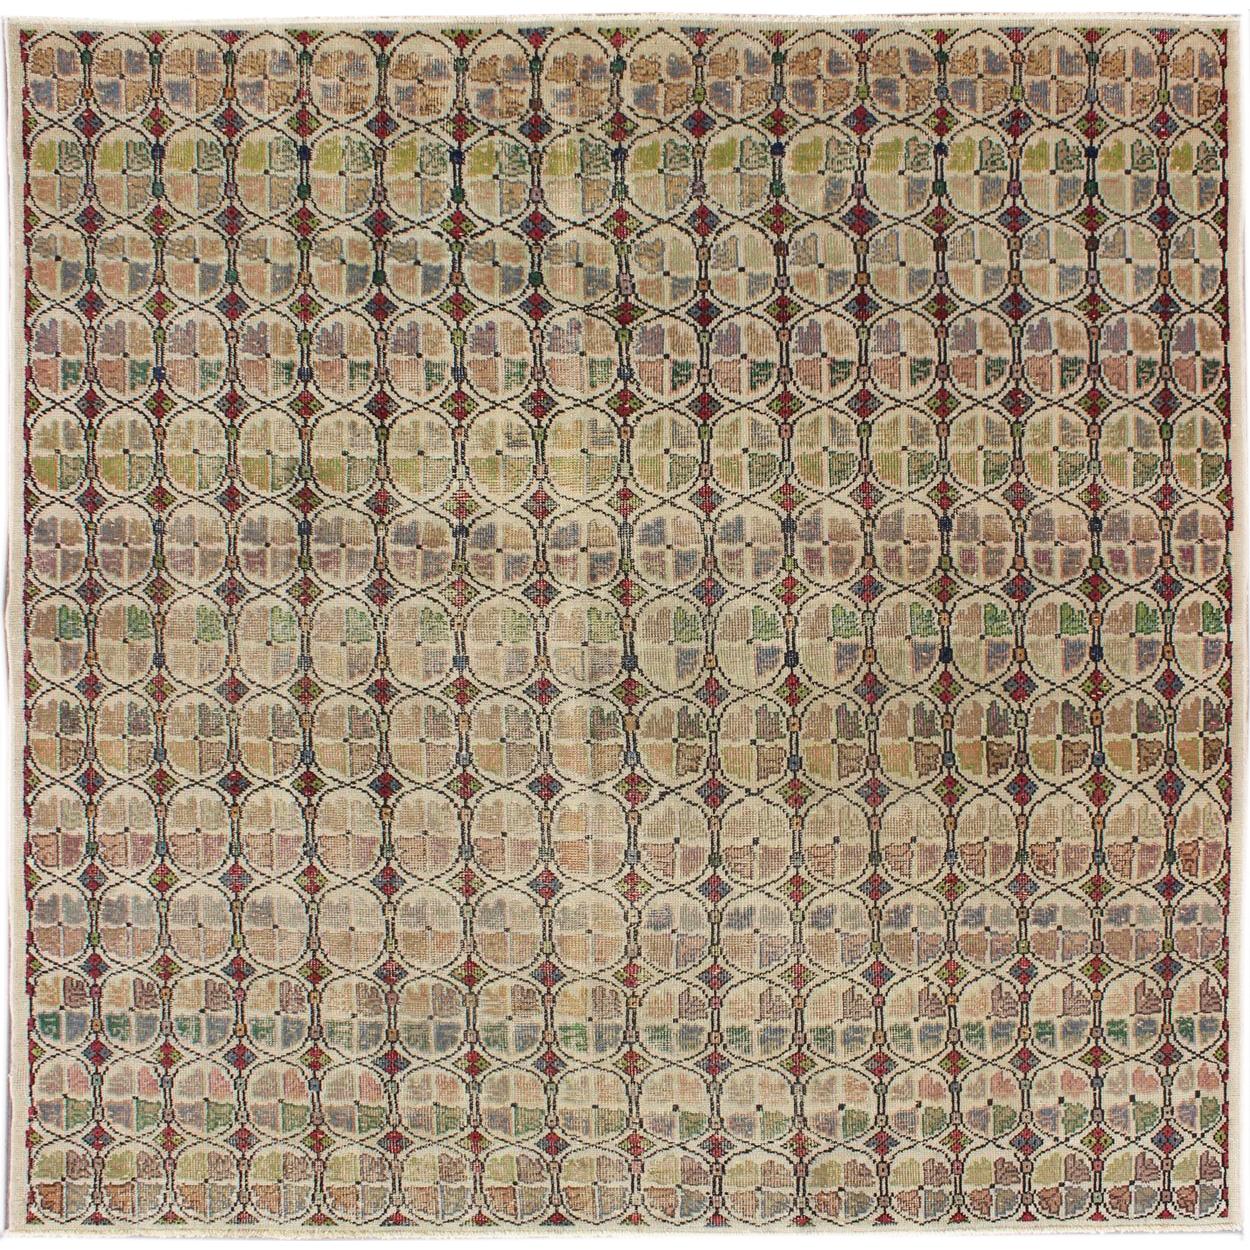 Quadratischer, moderner Mid-Century-Teppich mit kreisförmigem Muster in verschiedenen Farben